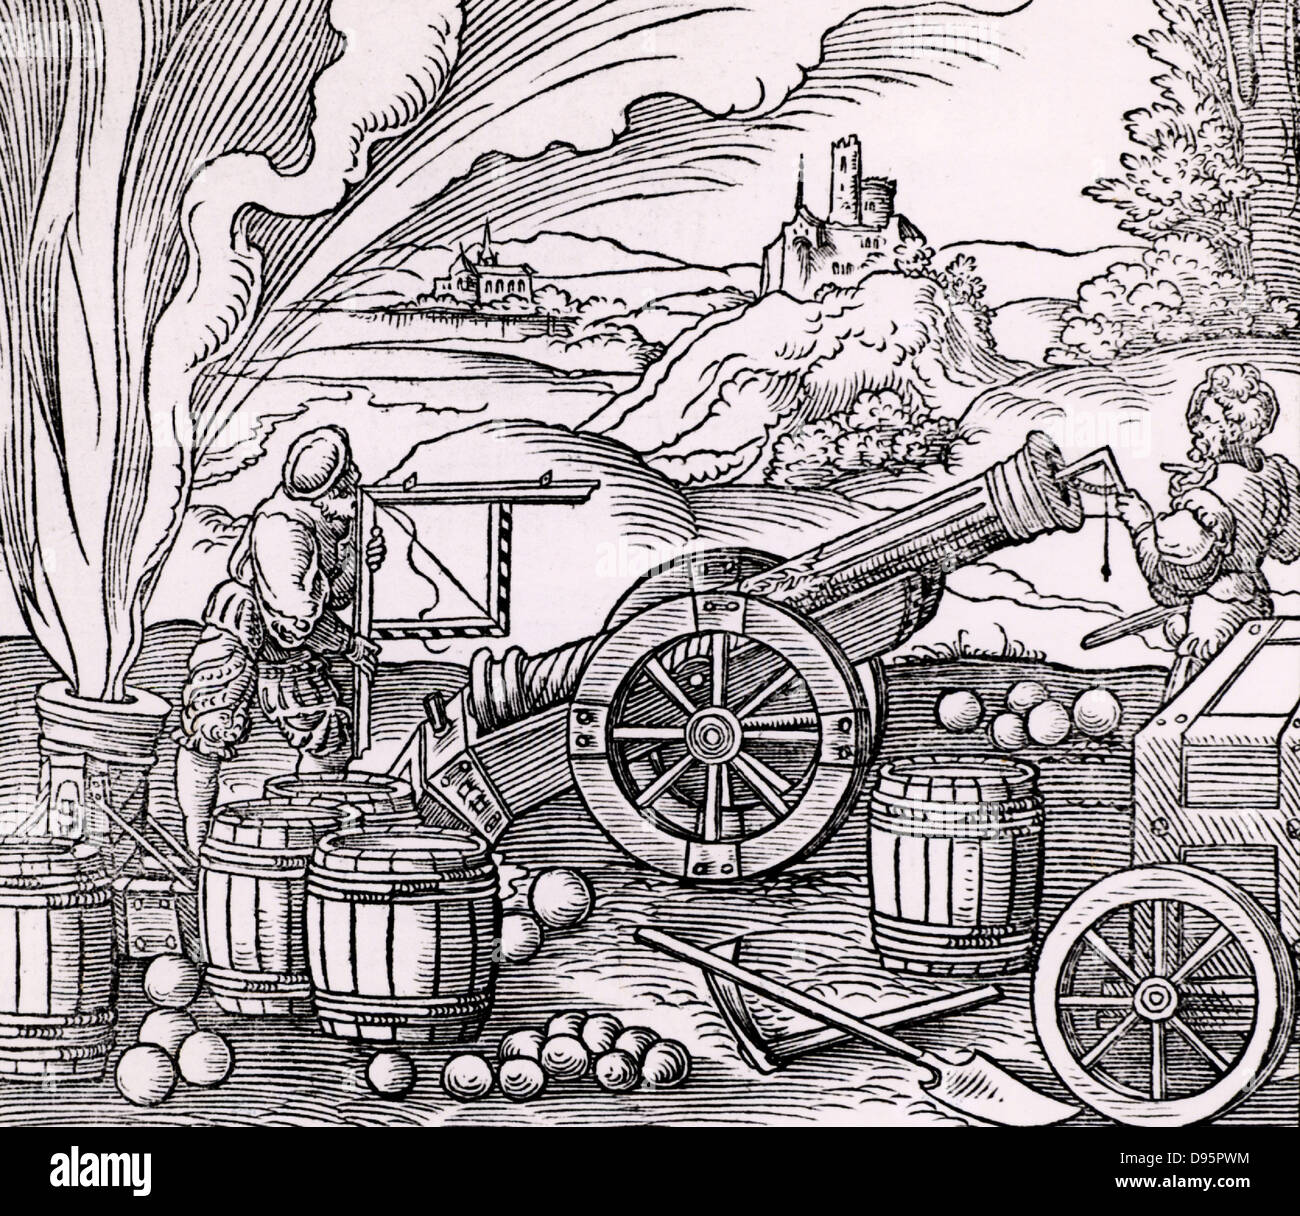 Gunners calcul l'altitude d'une pièce d'artillerie à l'aide d'un clinomètre et marqués d'un quadrant des échelles d'ombre. Autour d'eux sont des barils de poudre, boulets de différentes tailles. Sur la gauche un mortier est refoulé. À partir de 'Architechtur .. Mathematischen .. Kunst' par Gaultherius Rivius (Nuremberg, 1547). Gravure sur bois. Banque D'Images